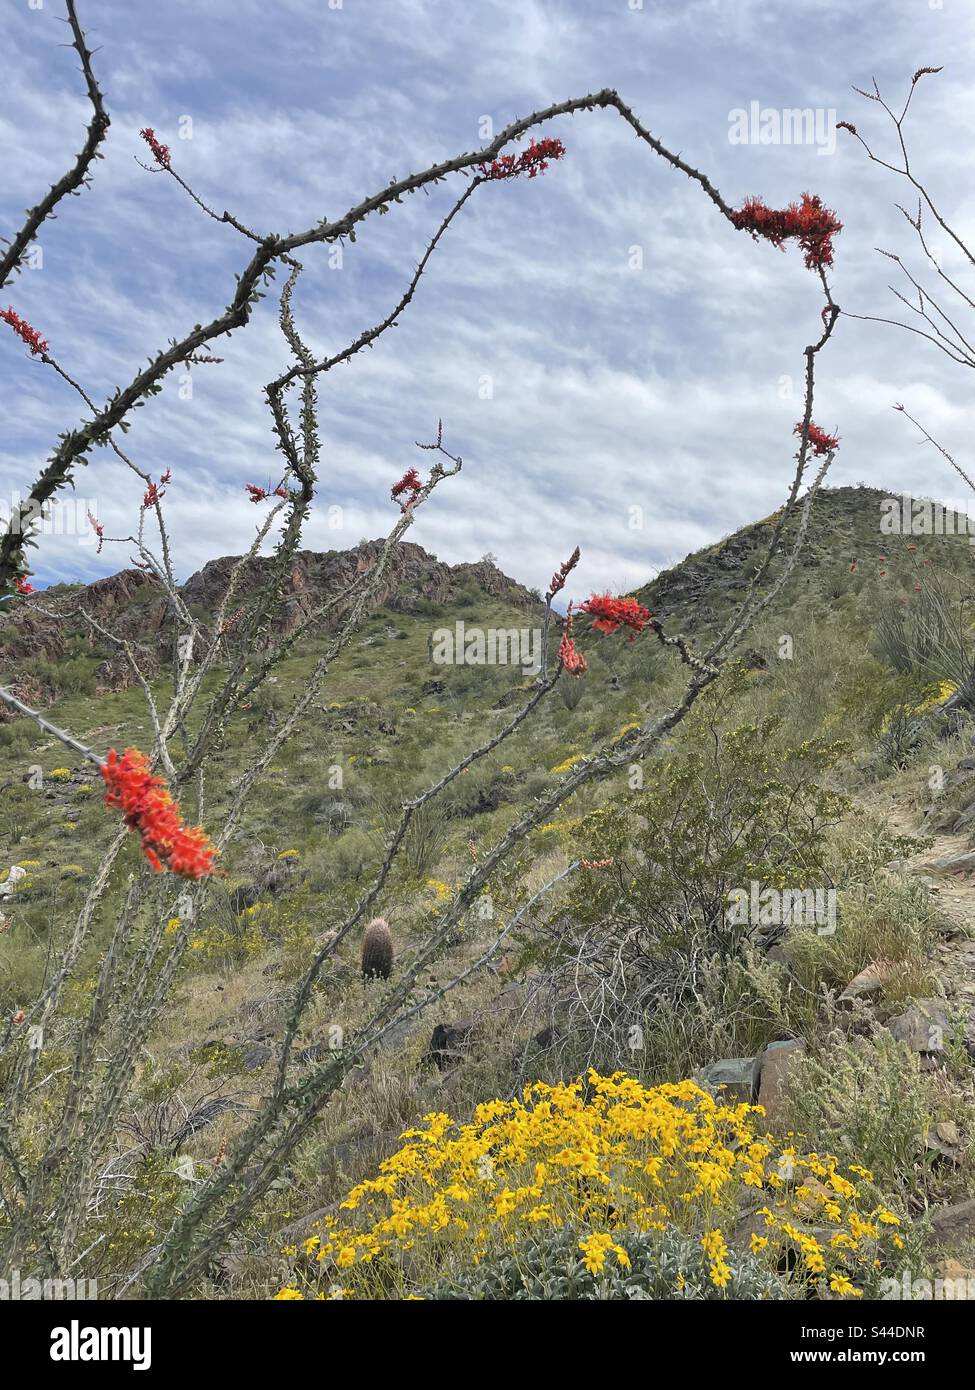 Sentier de réserve des montagnes de Phoenix au printemps, sentier bordé de buissons fragiles, cactus d'Ocotillo en fleurs rouges, fleurs sauvages, désert de Sonoran, Arizona Banque D'Images